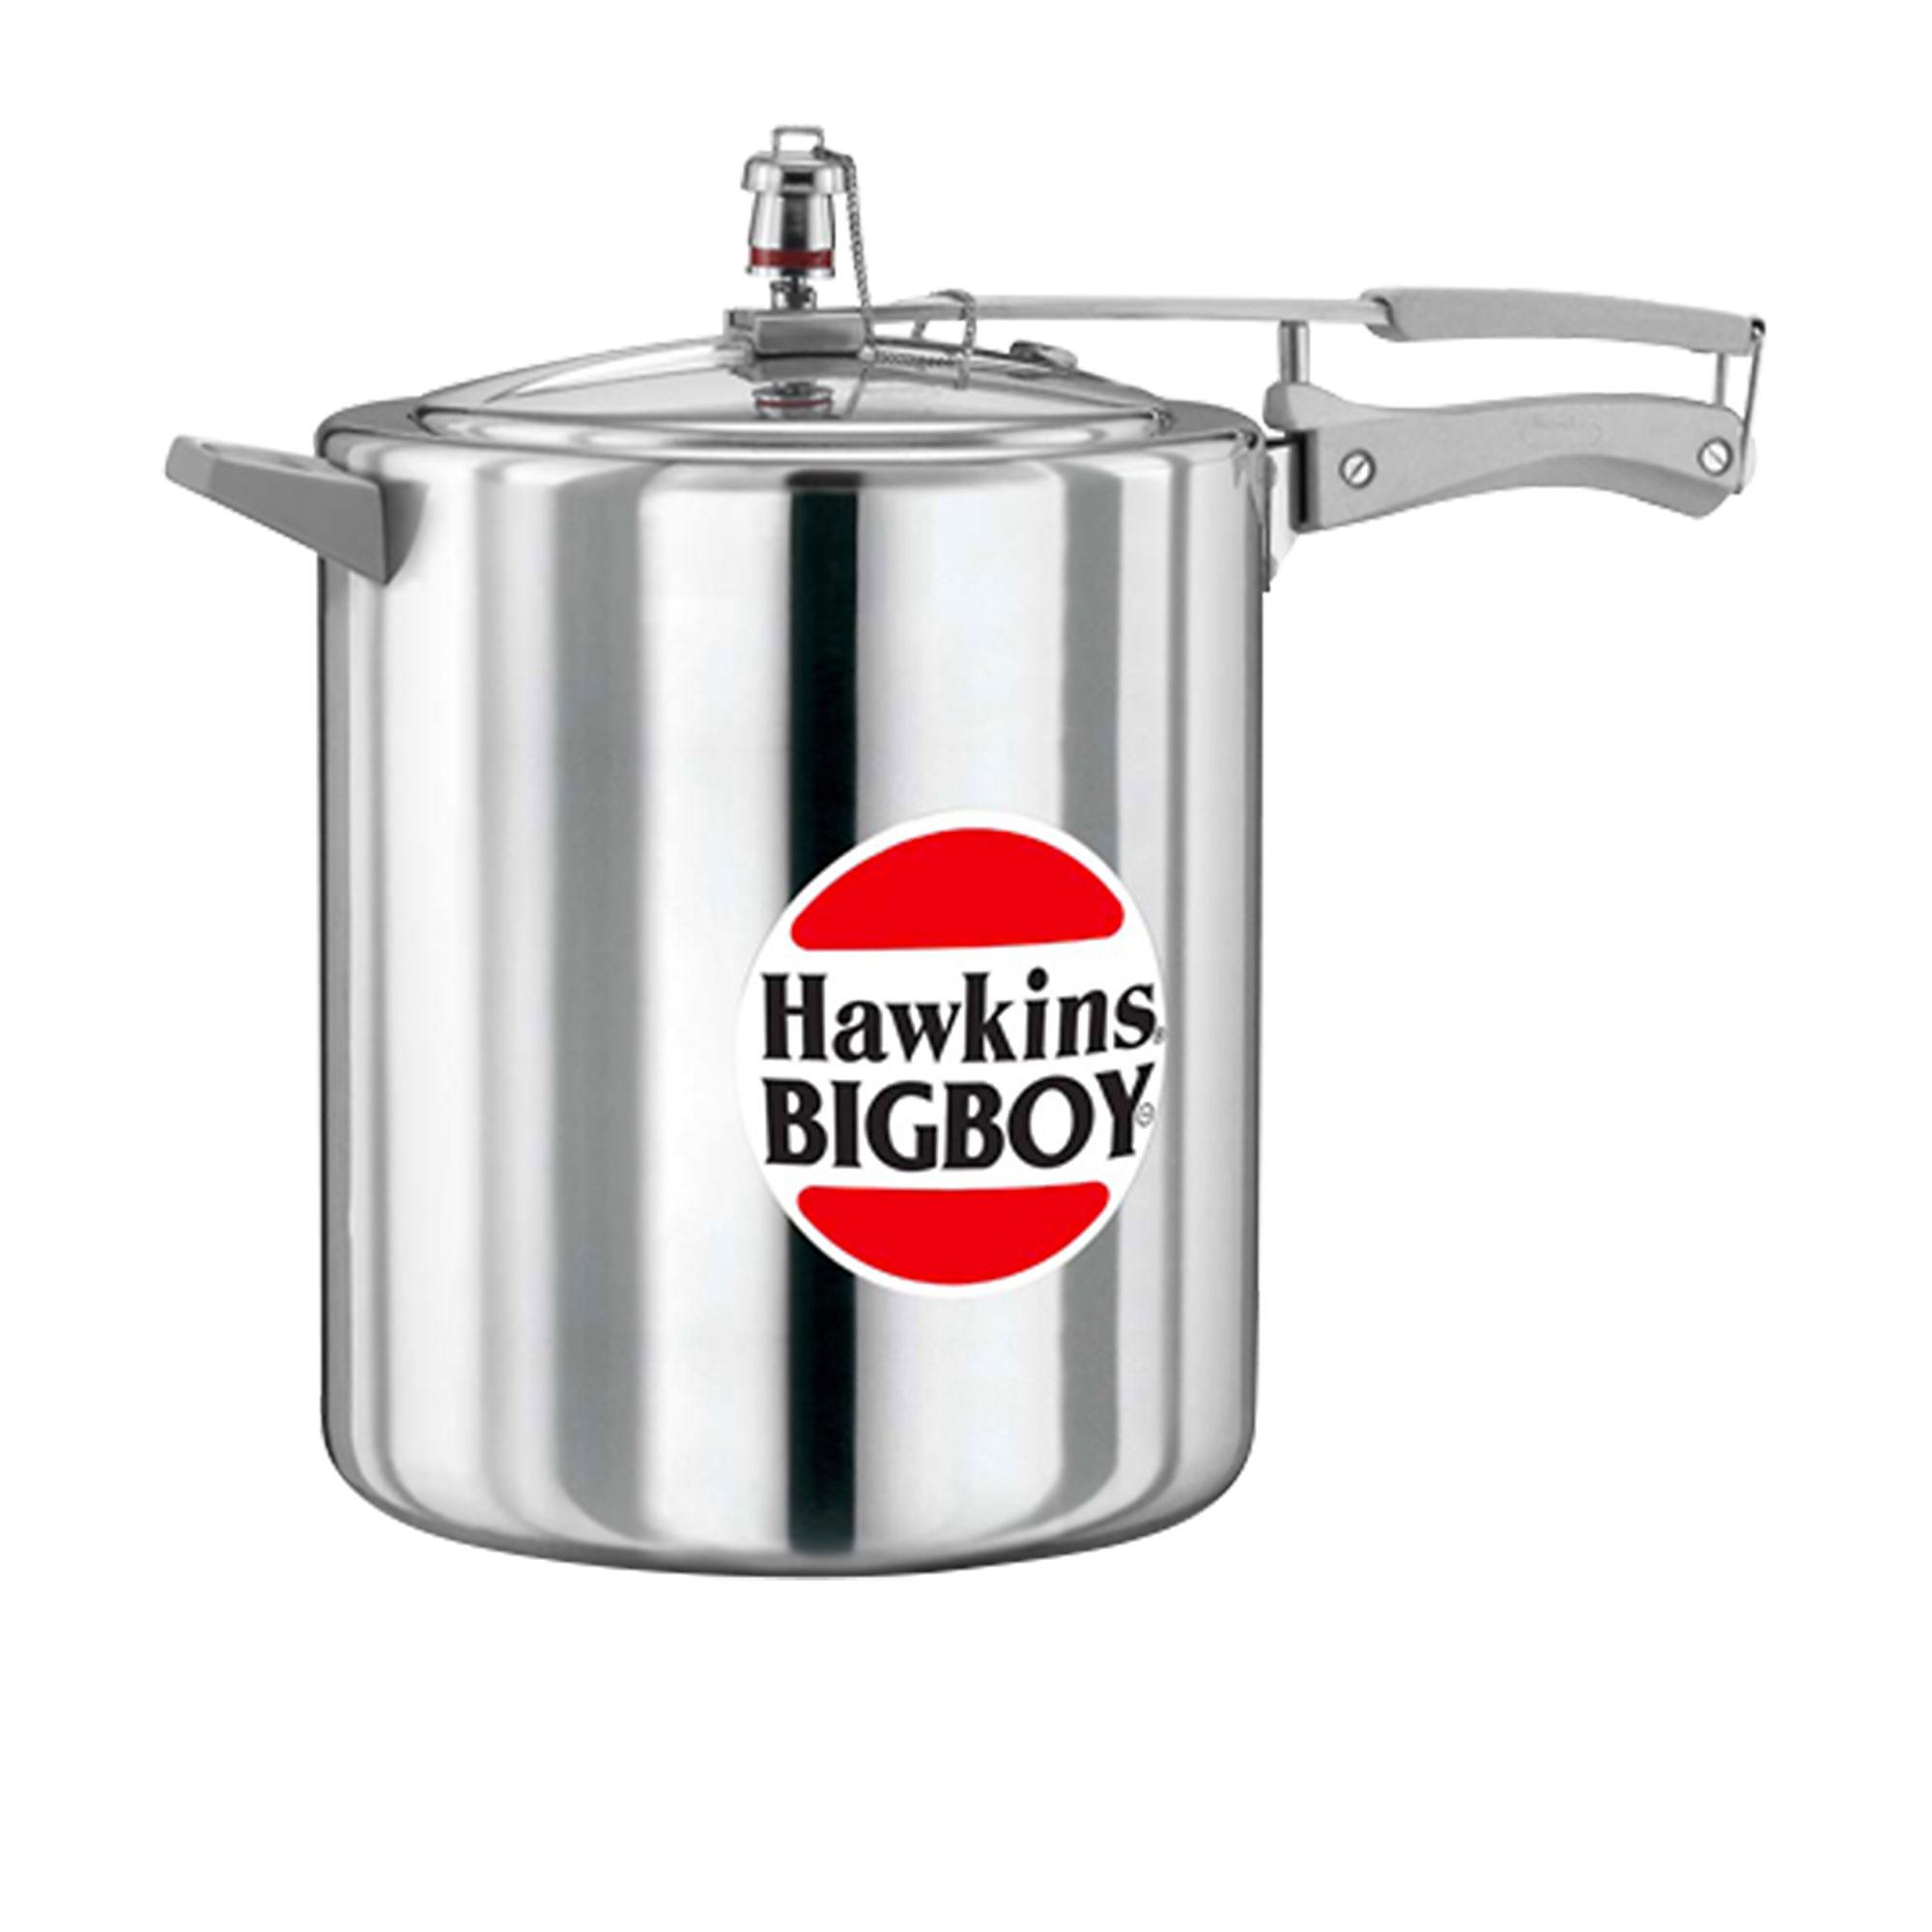 Hawkins Big Boy Aluminium Pressure Cooker 14L Image 1